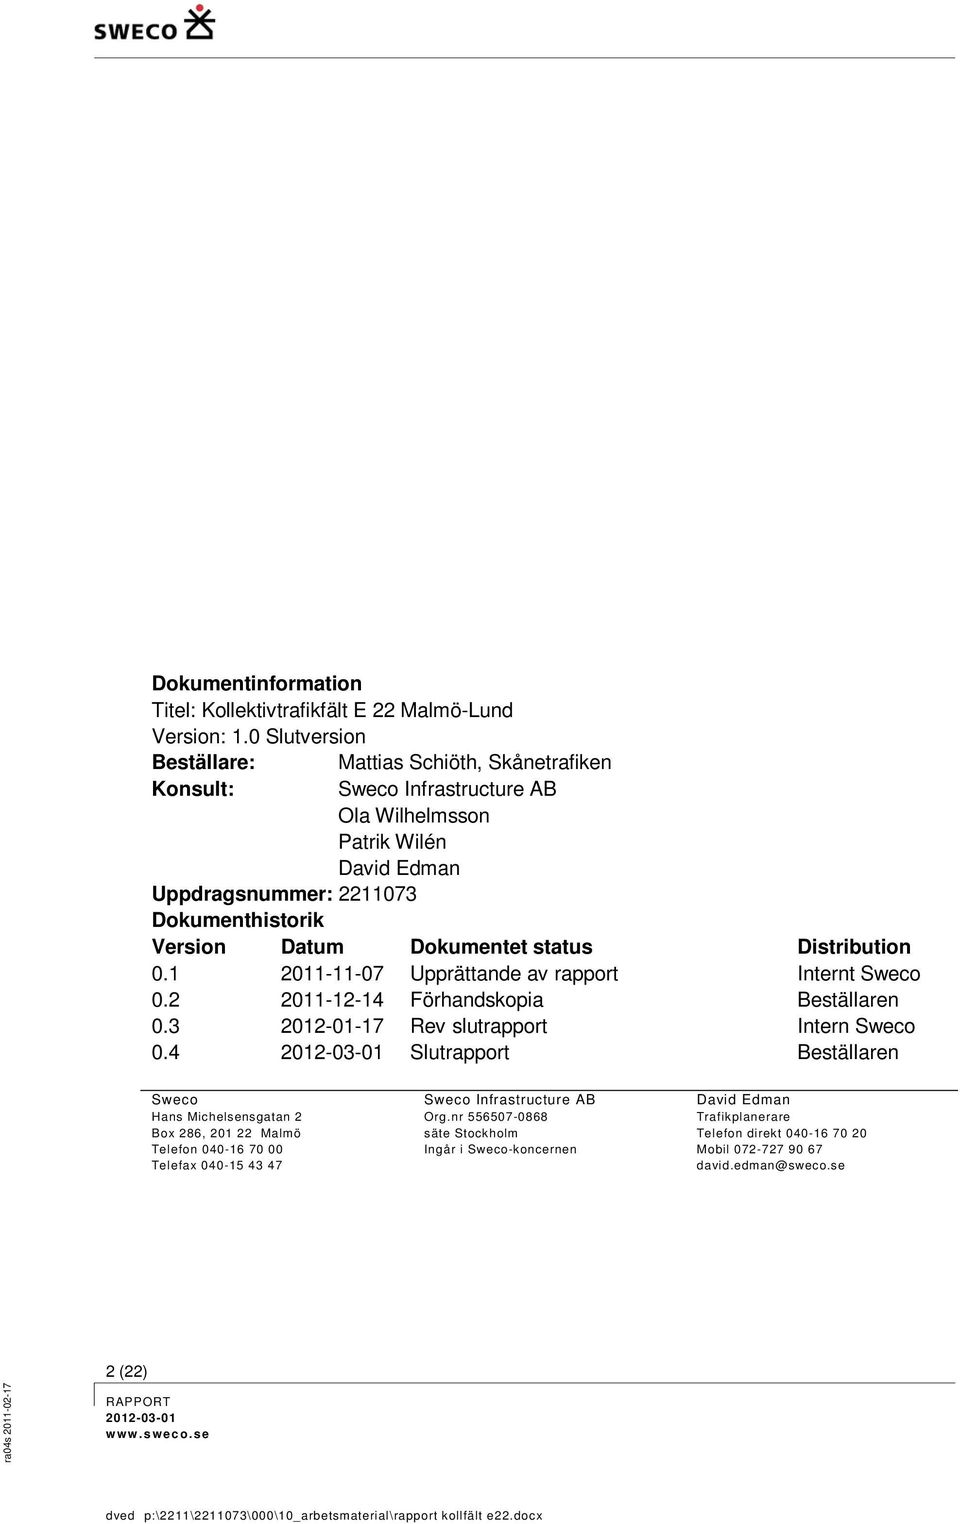 status Distribution 0.1 2011-11-07 Upprättande av rapport Internt Sweco 0.2 2011-12-14 Förhandskopia Beställaren 0.3 2012-01-17 Rev slutrapport Intern Sweco 0.